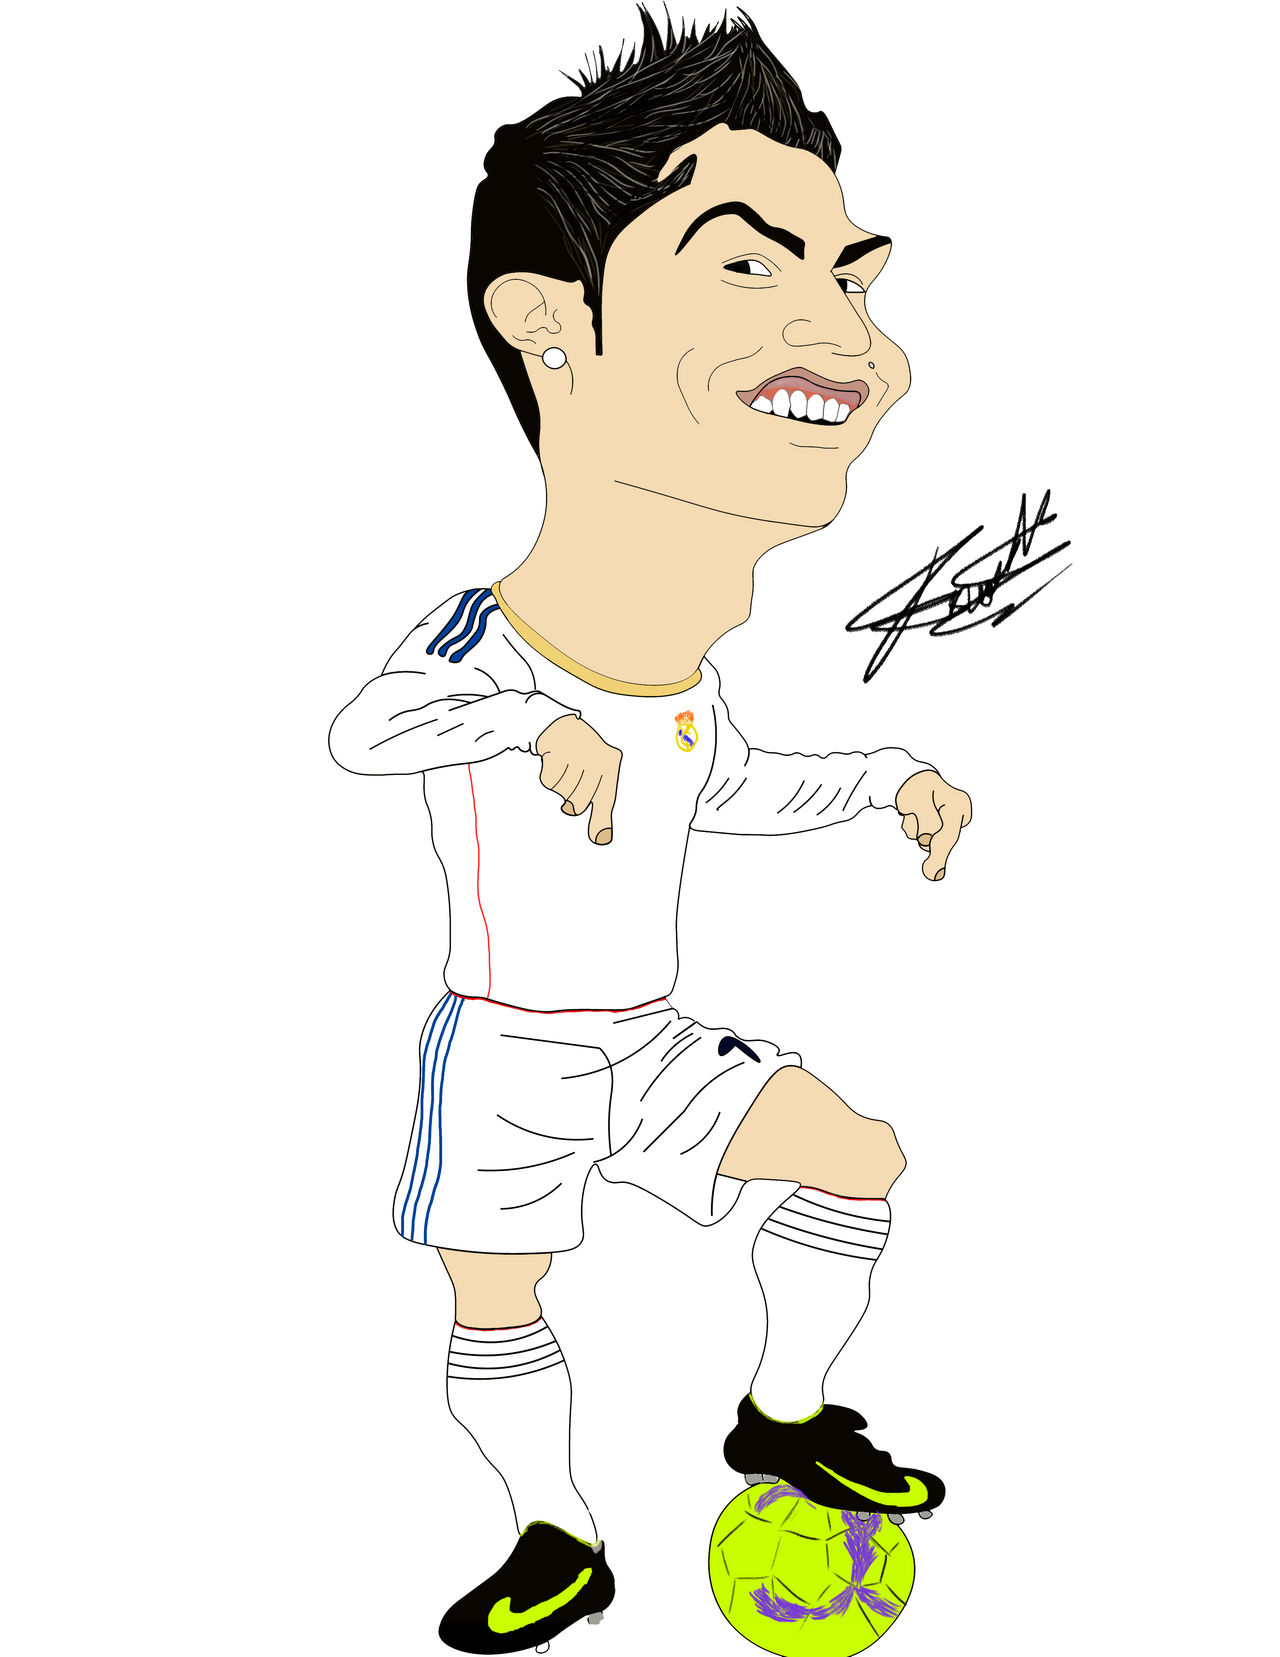 Cristiano Ronaldo 2009 cartoon by Franmora10 on DeviantArt